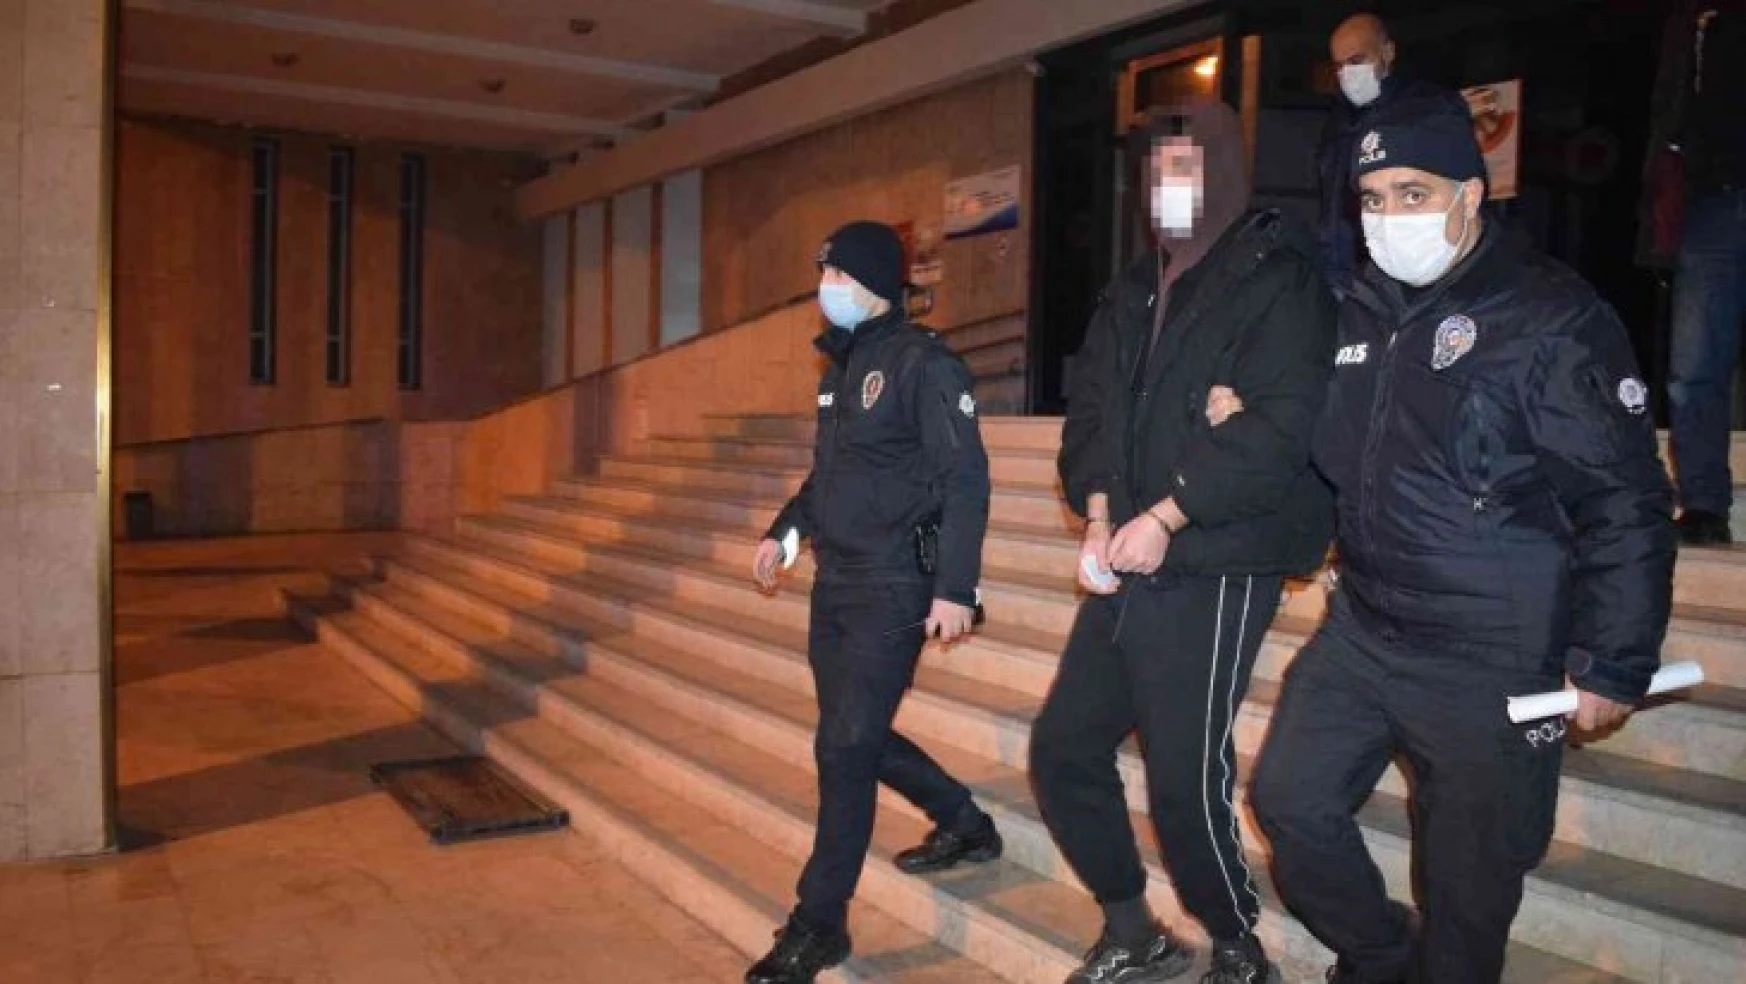 Malatya'daki pitpullu saldırıya 1 tutuklama